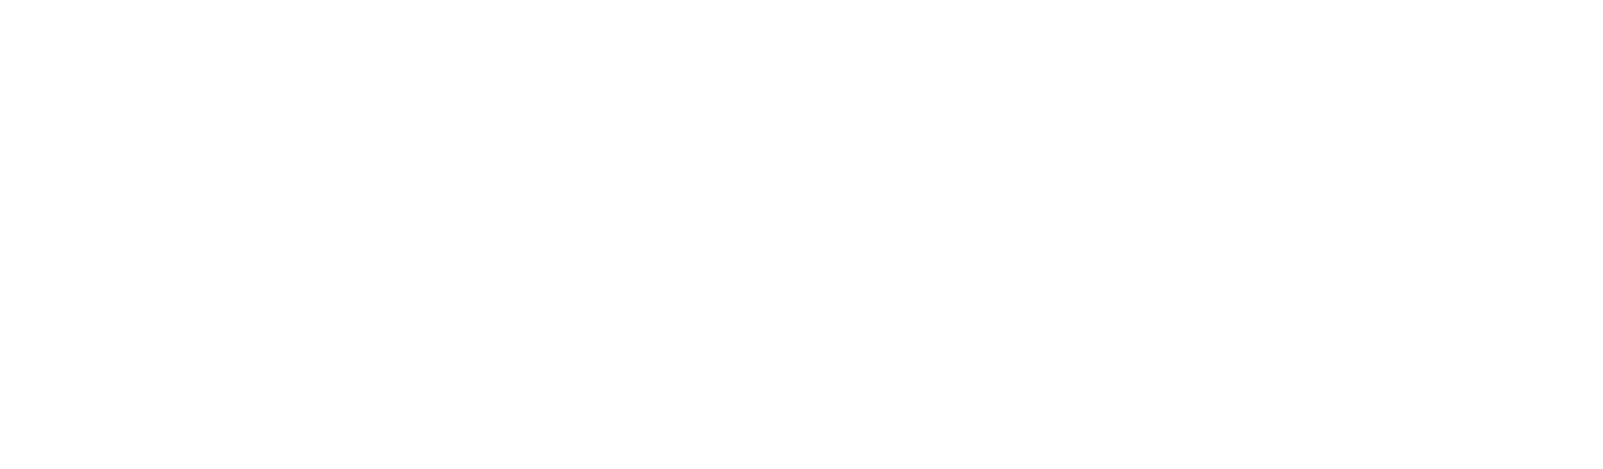 Ximmio